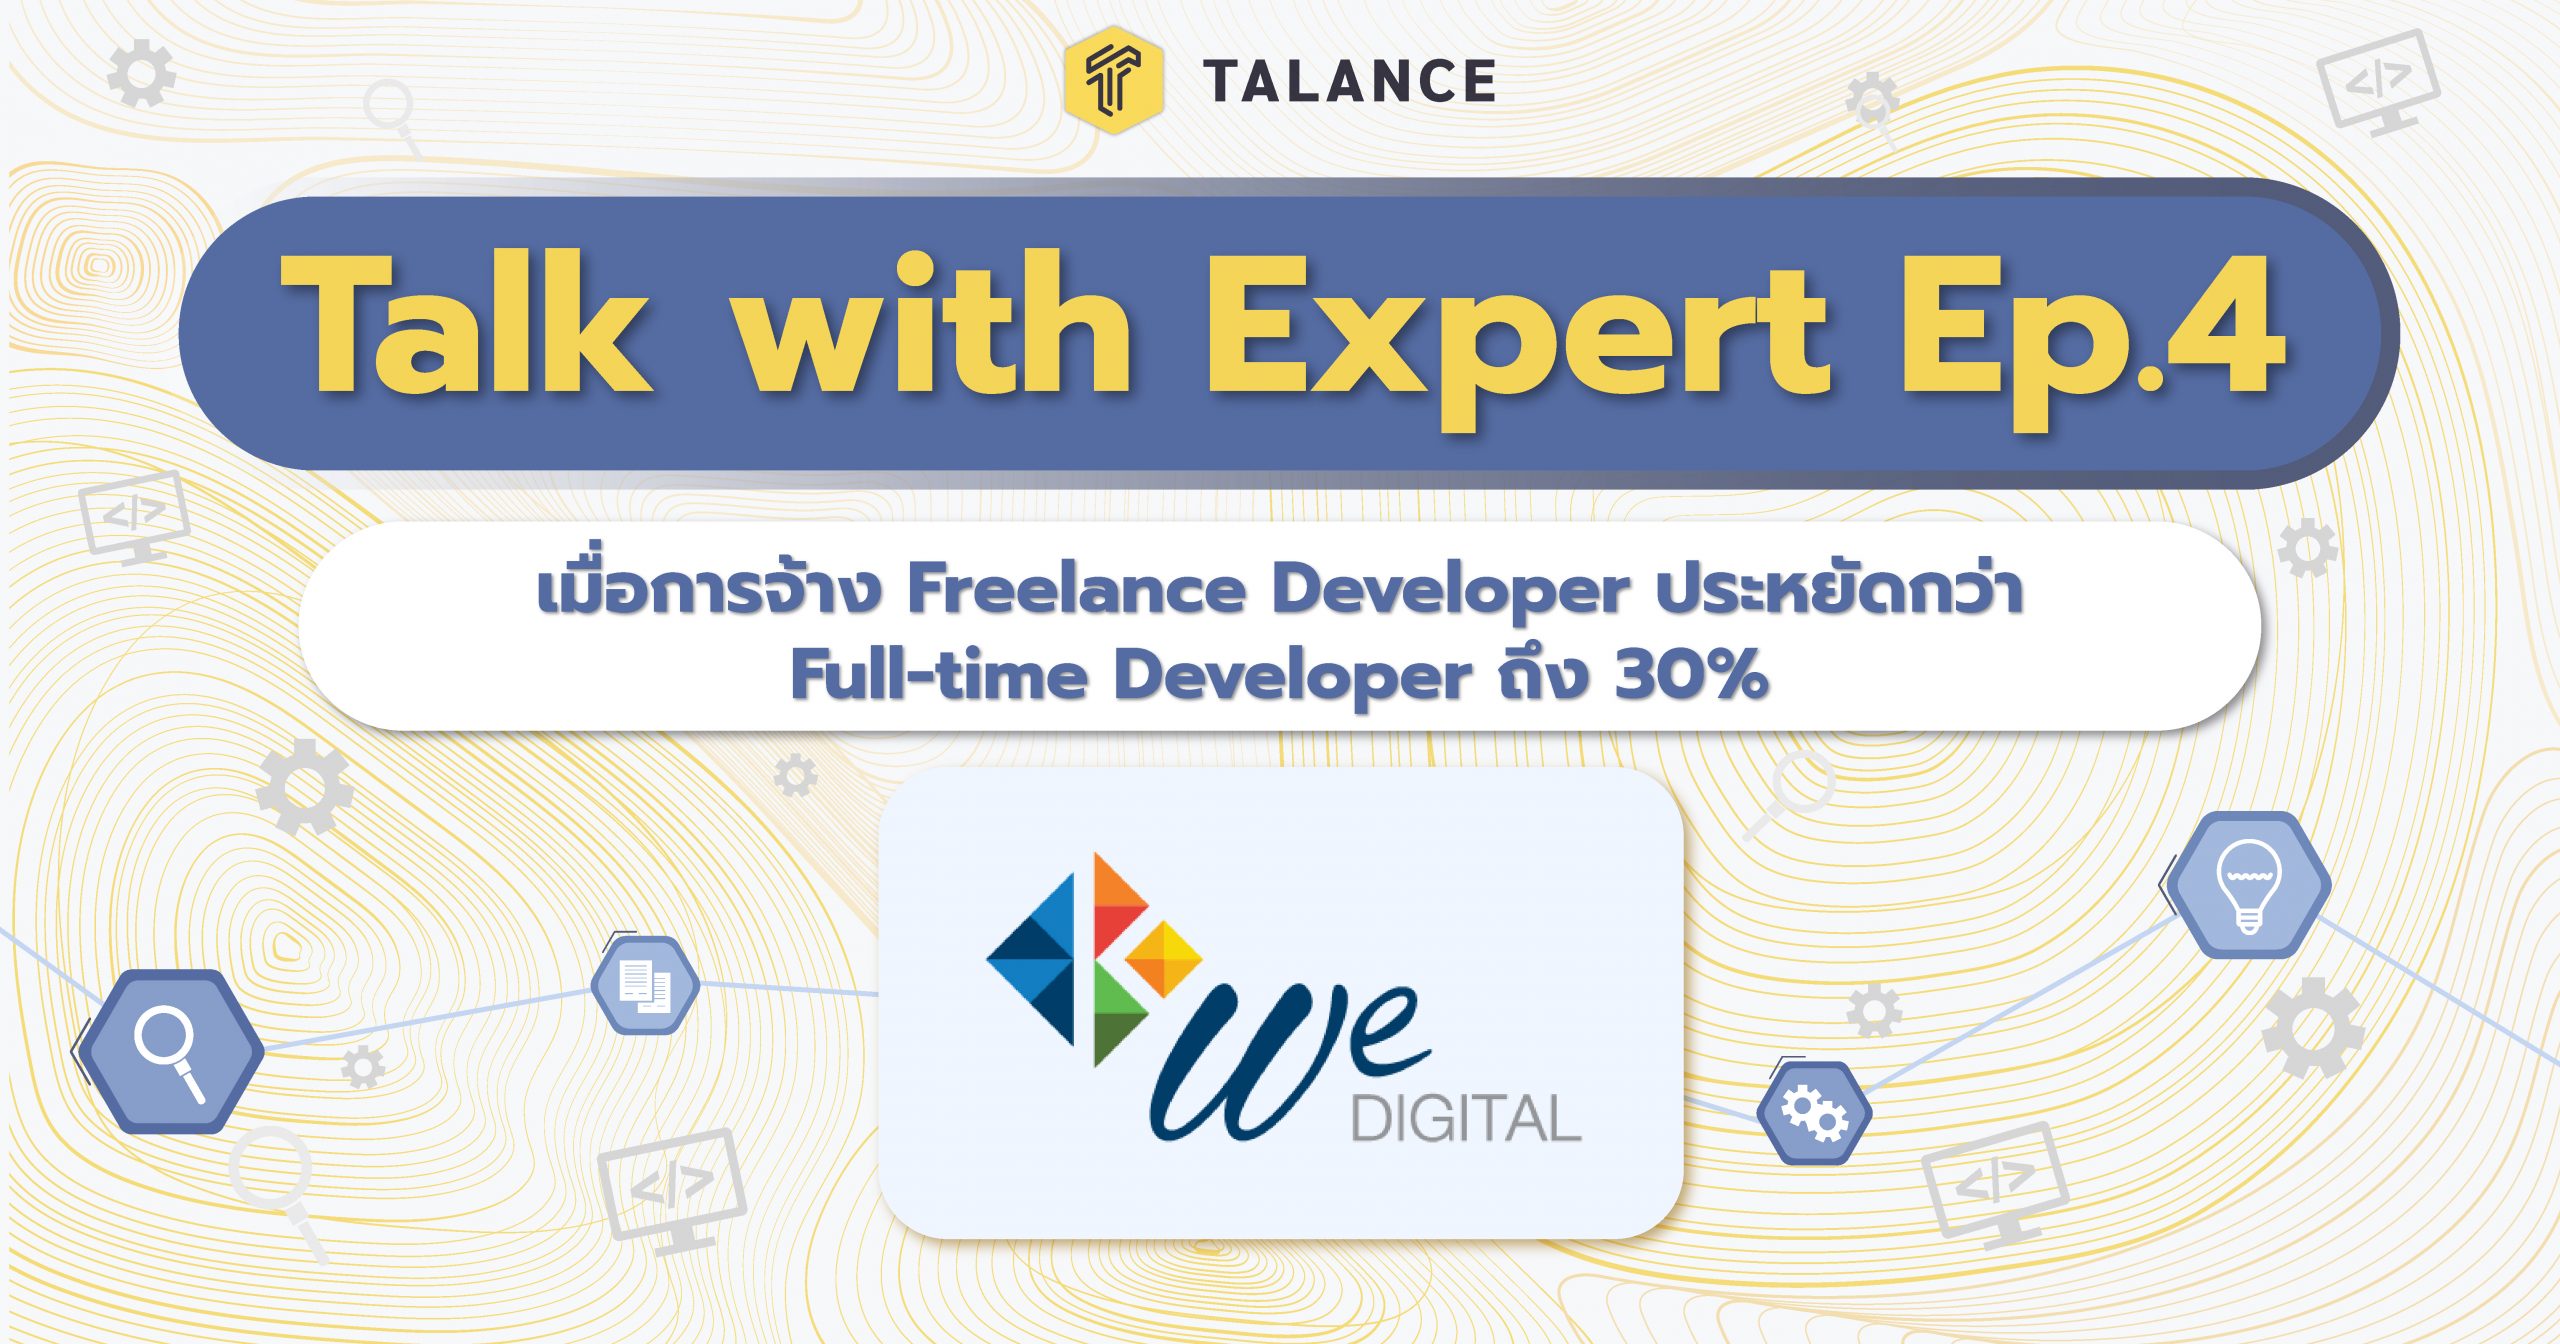 talk with expert ep4 Full-time developer vs Freelance developer byWe Digital